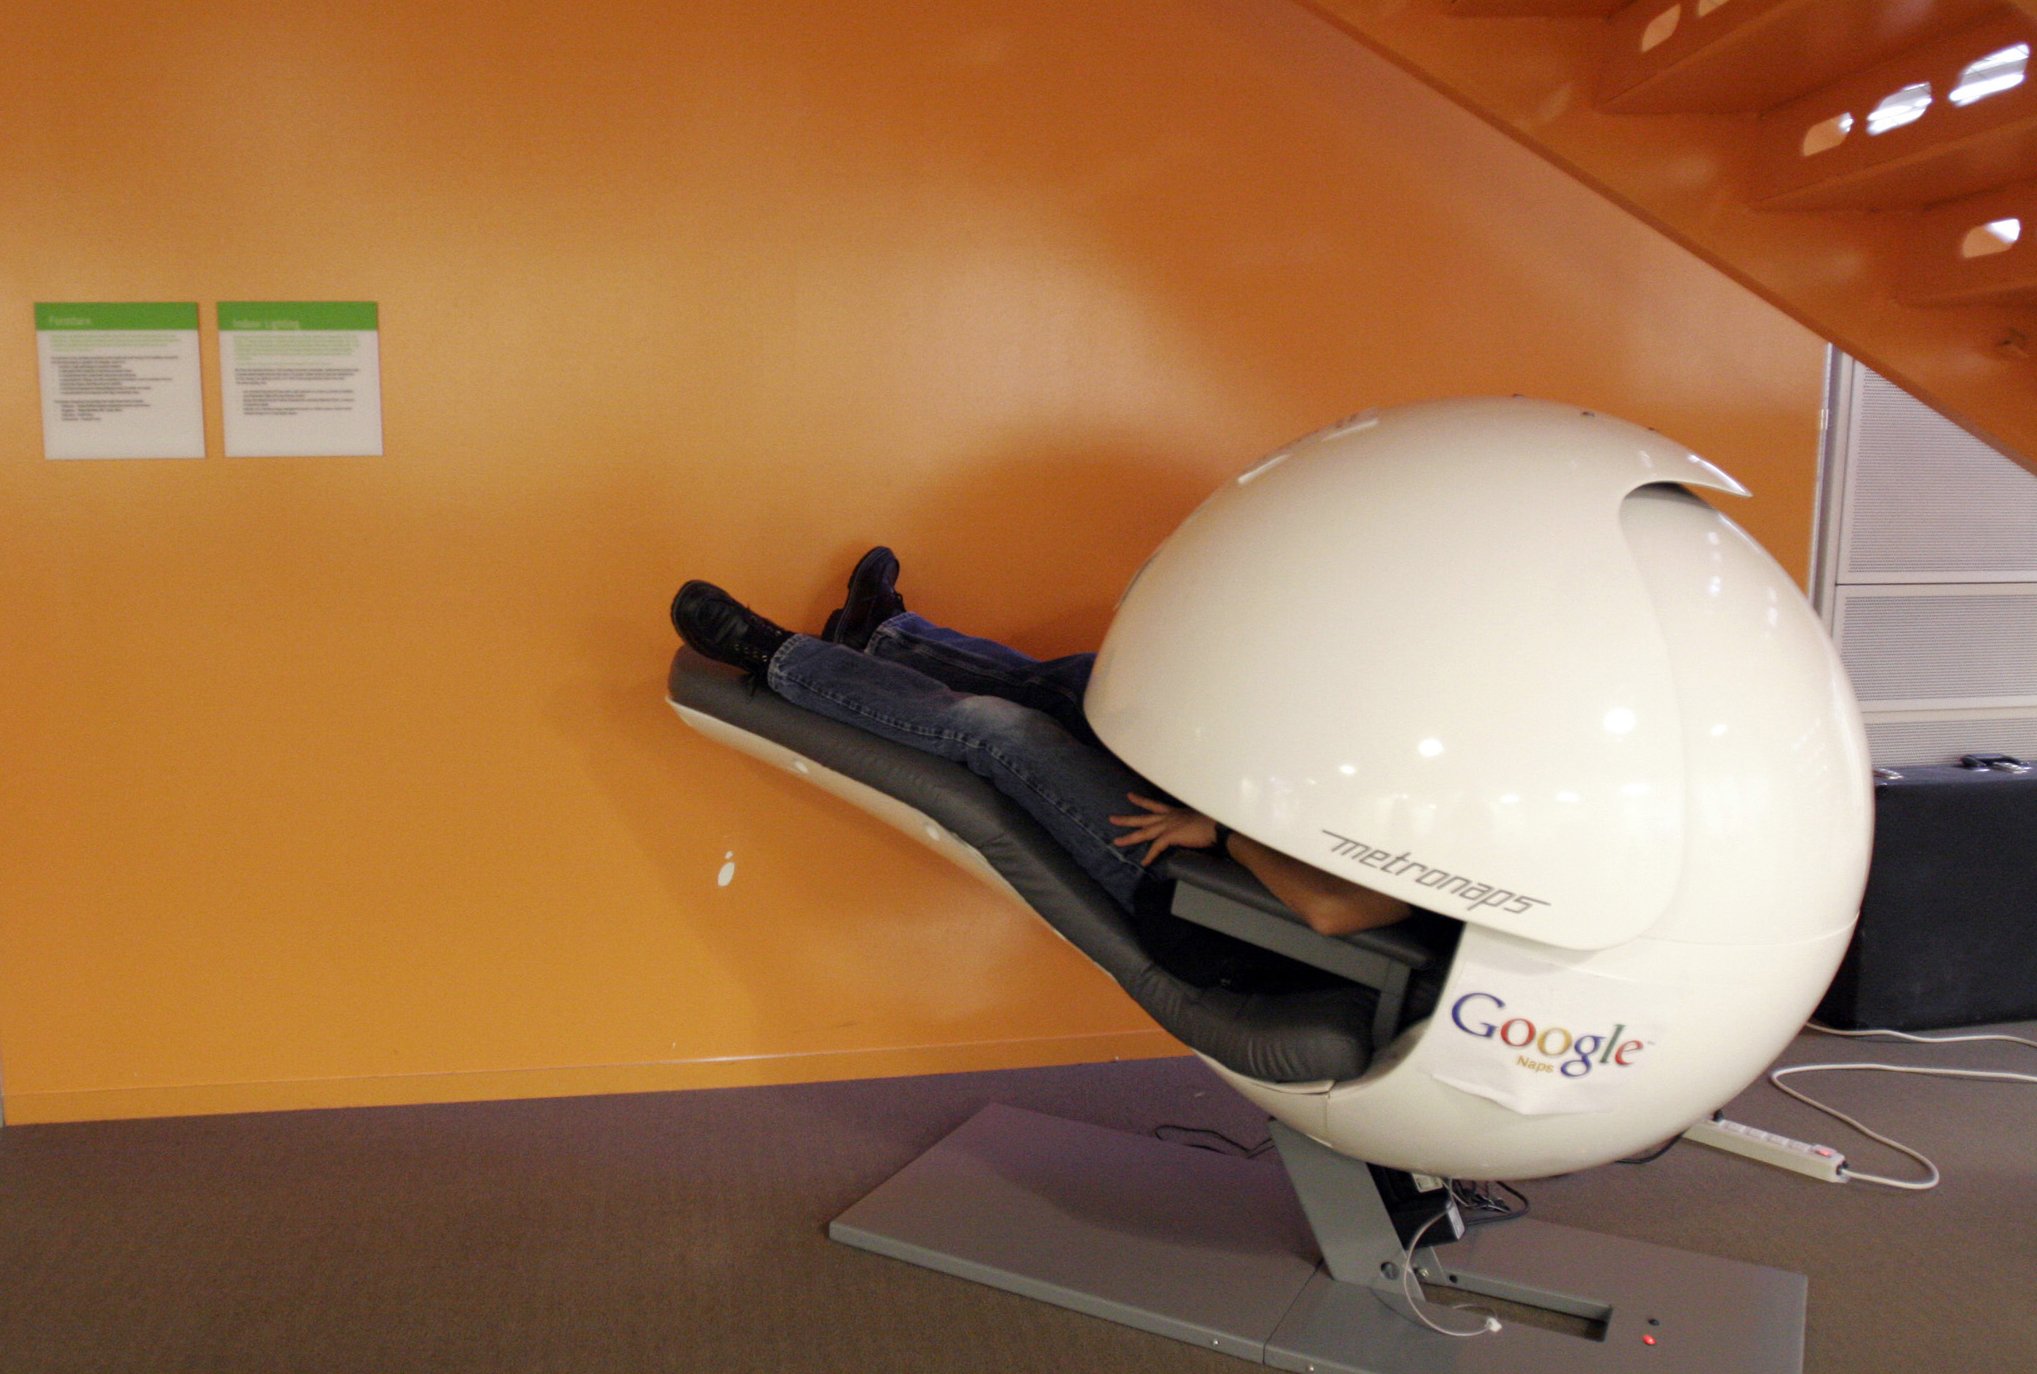 Sleep pods at Google-perks